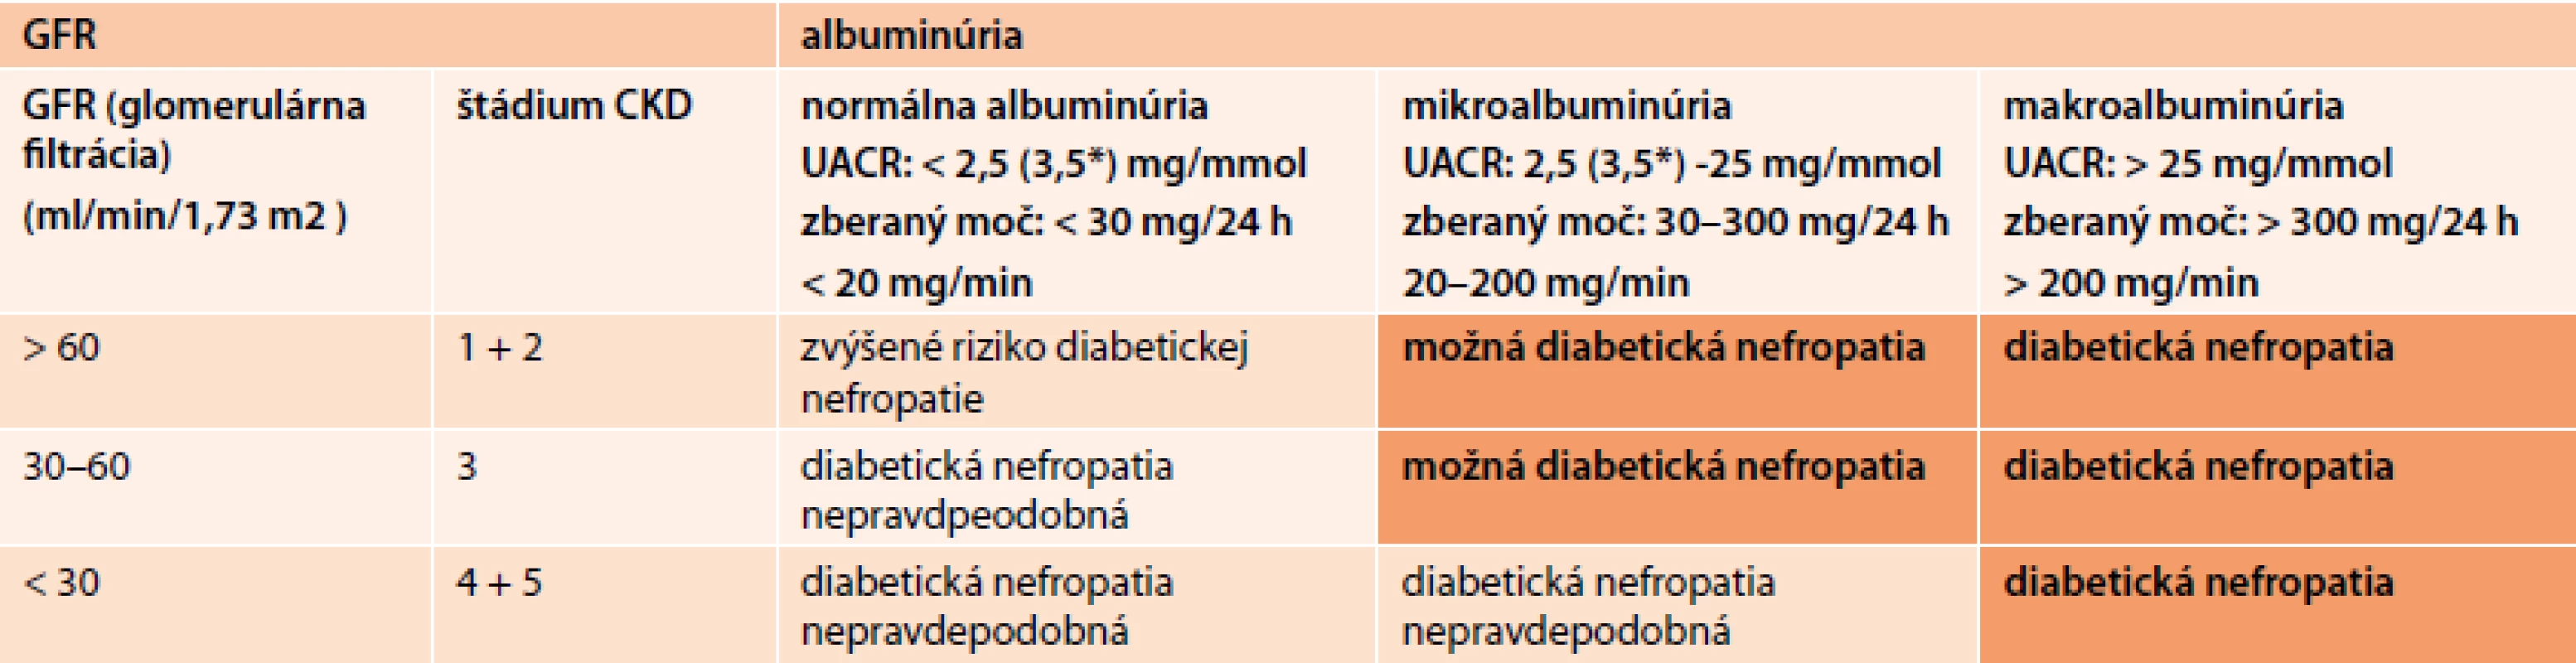 Hodnotenie prítomnosti diabetickej nefropatie u pacienta podľa albuminúrie a glomerulárnej
filtrácie) [24]